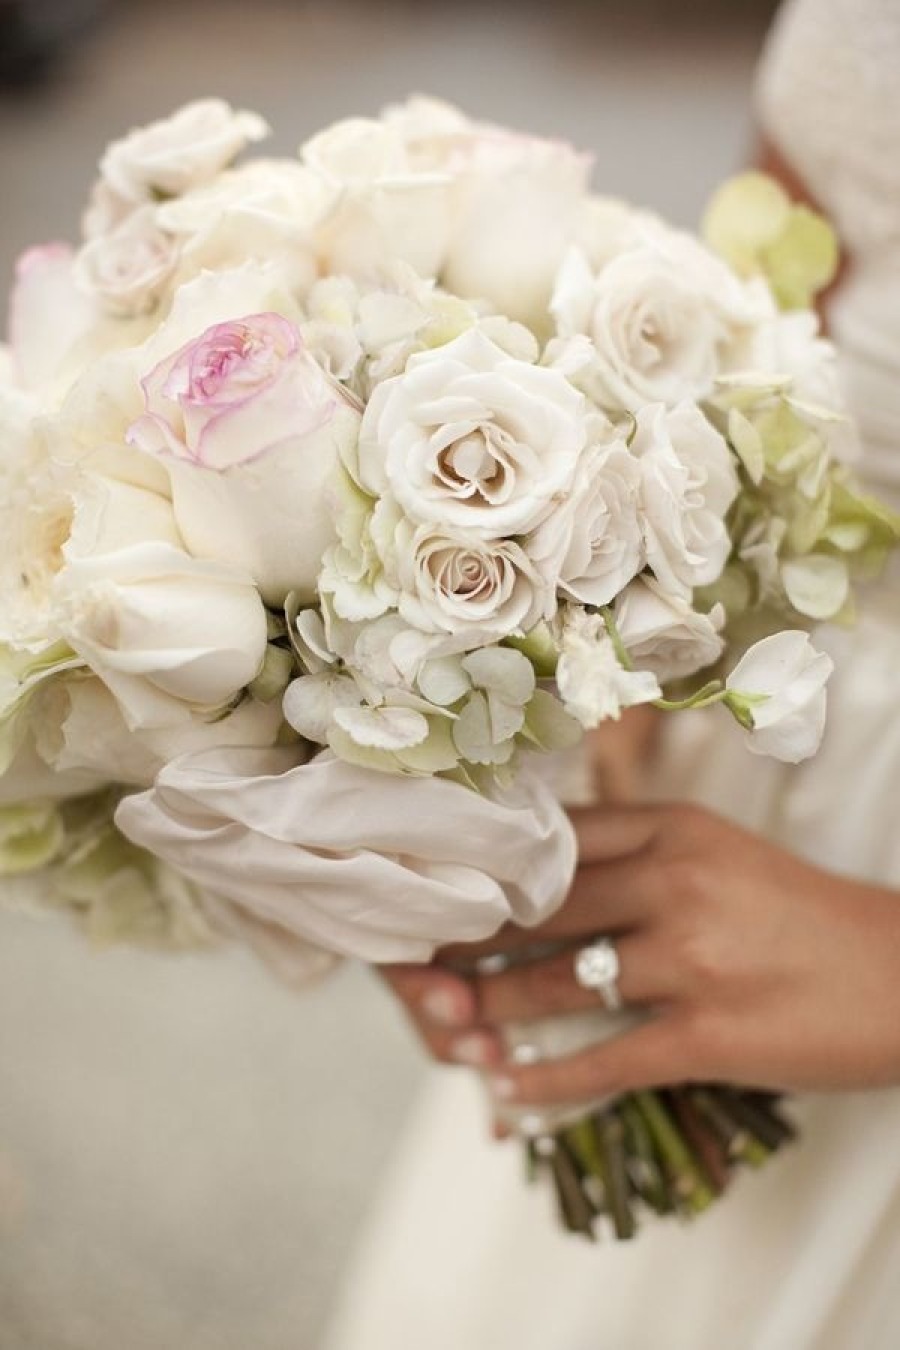 Pretty Wedding Bouquet Ideas Christian Wedding